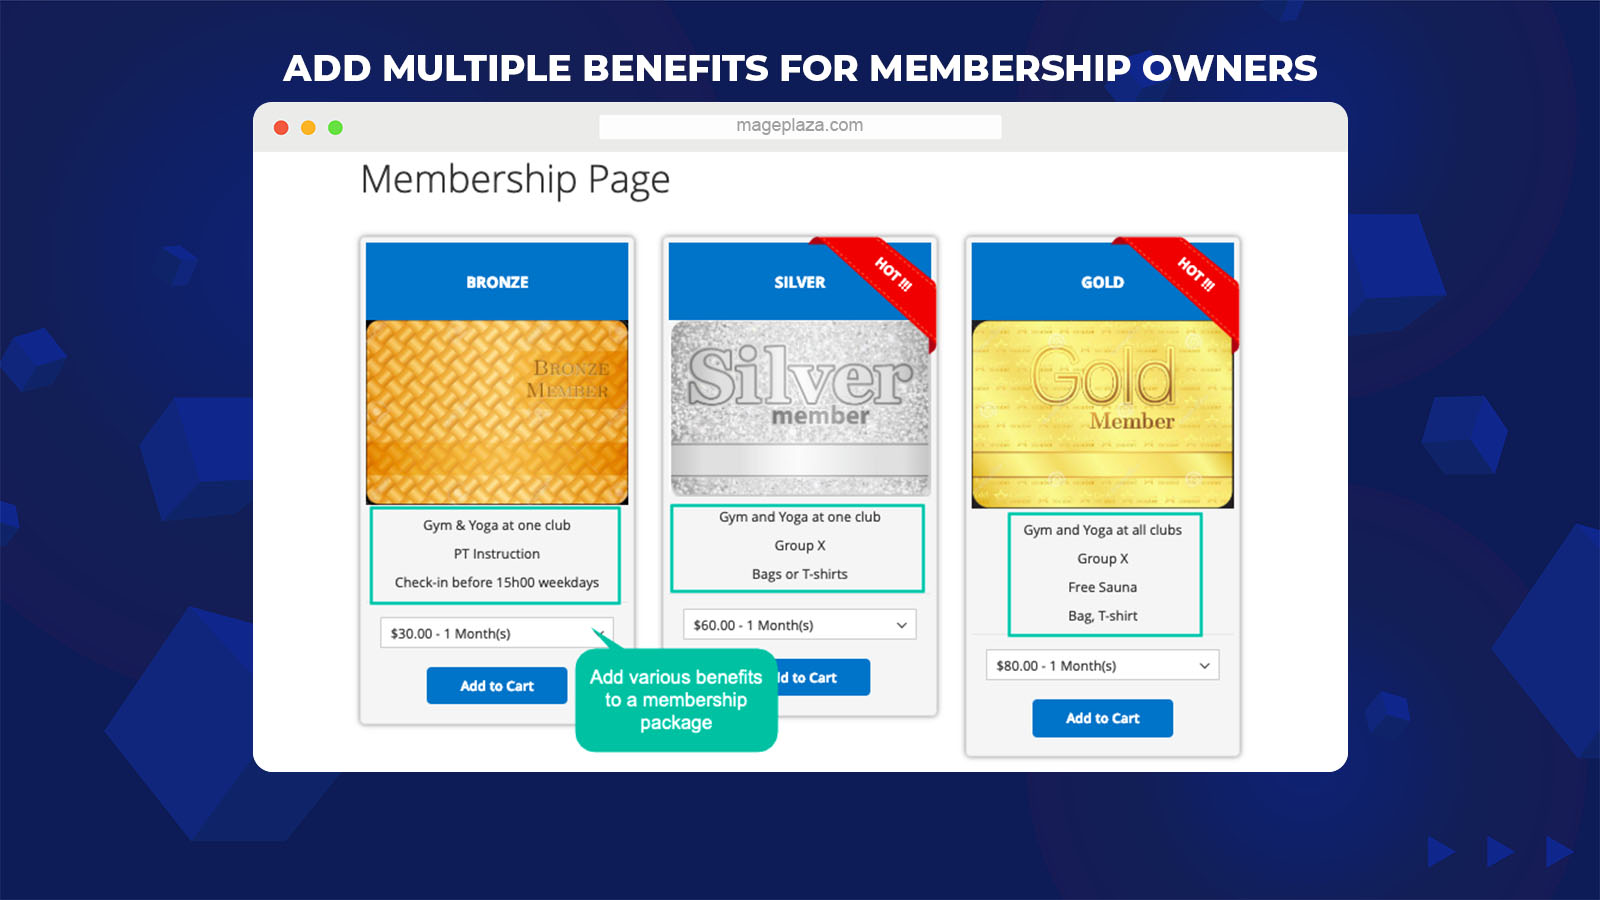 magento 2 membership extension